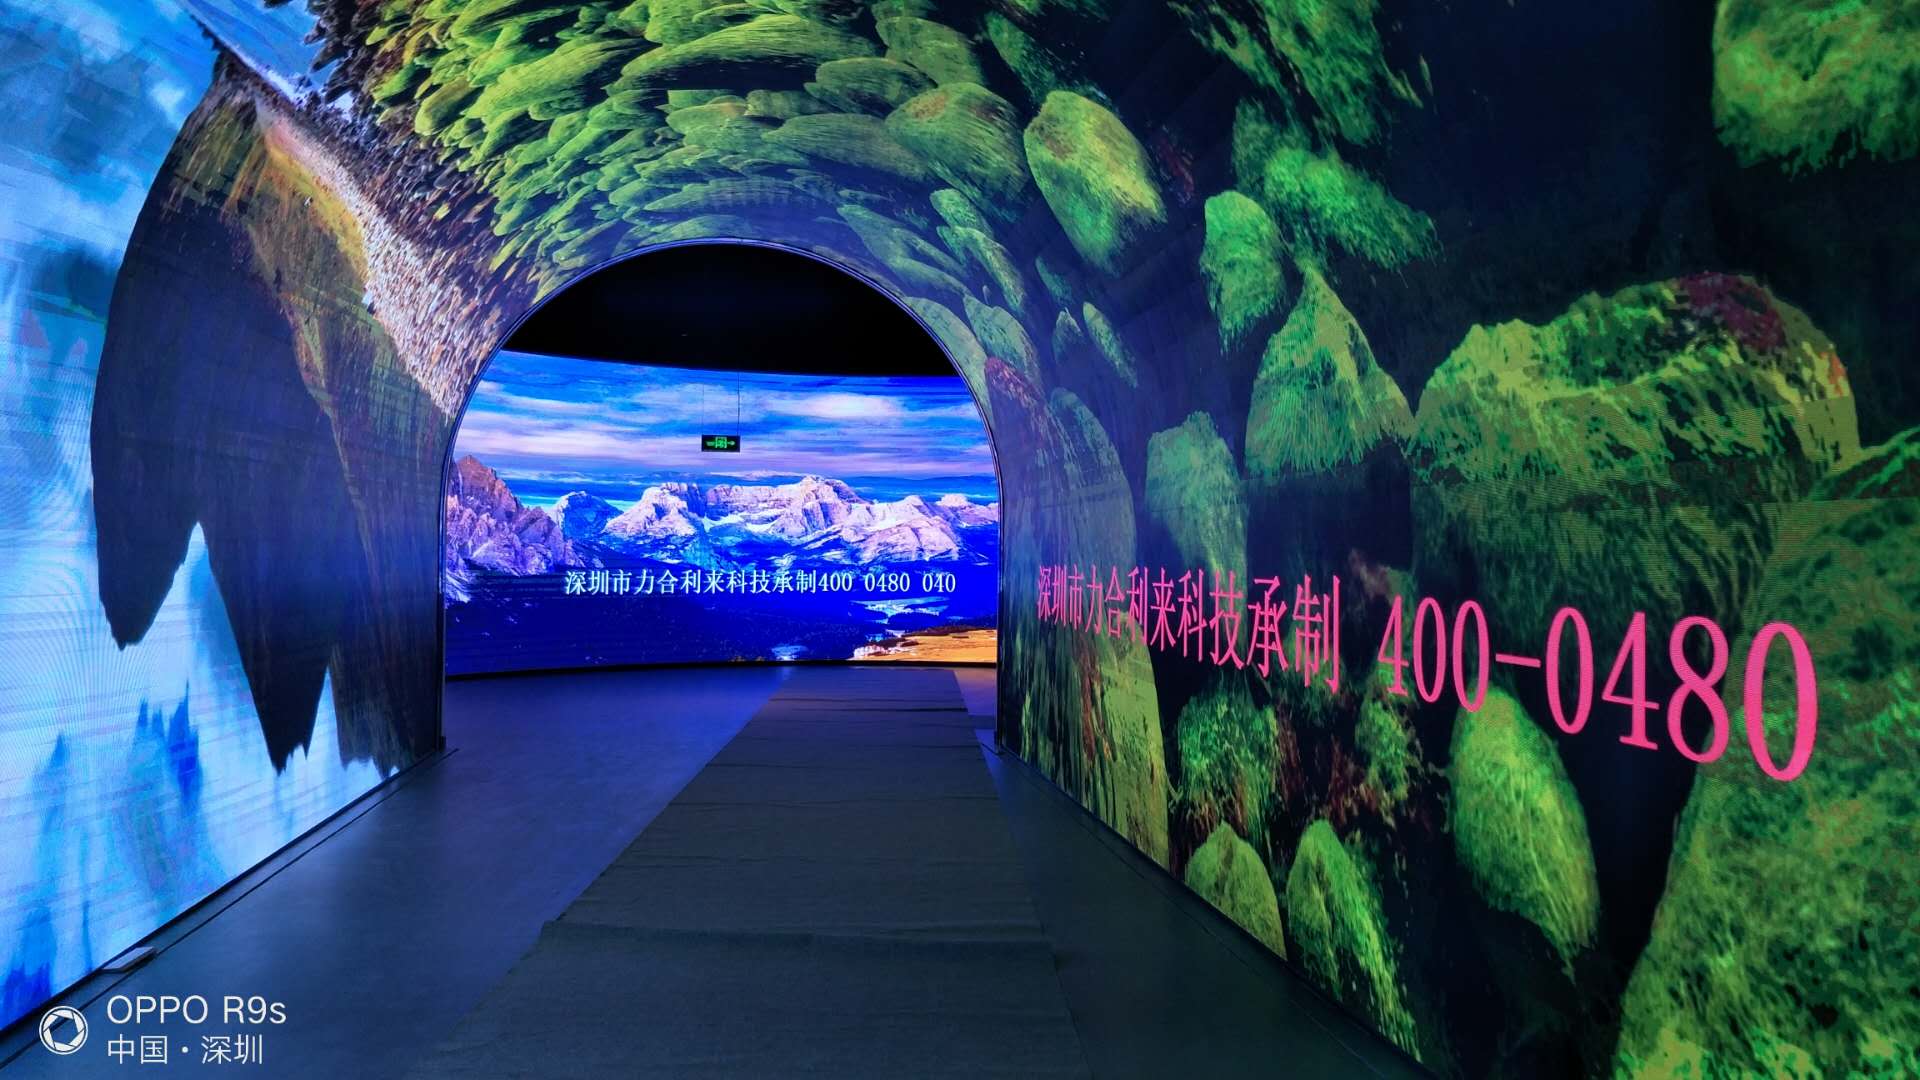 时光隧道LED显示屏”亮相深圳南山博物馆